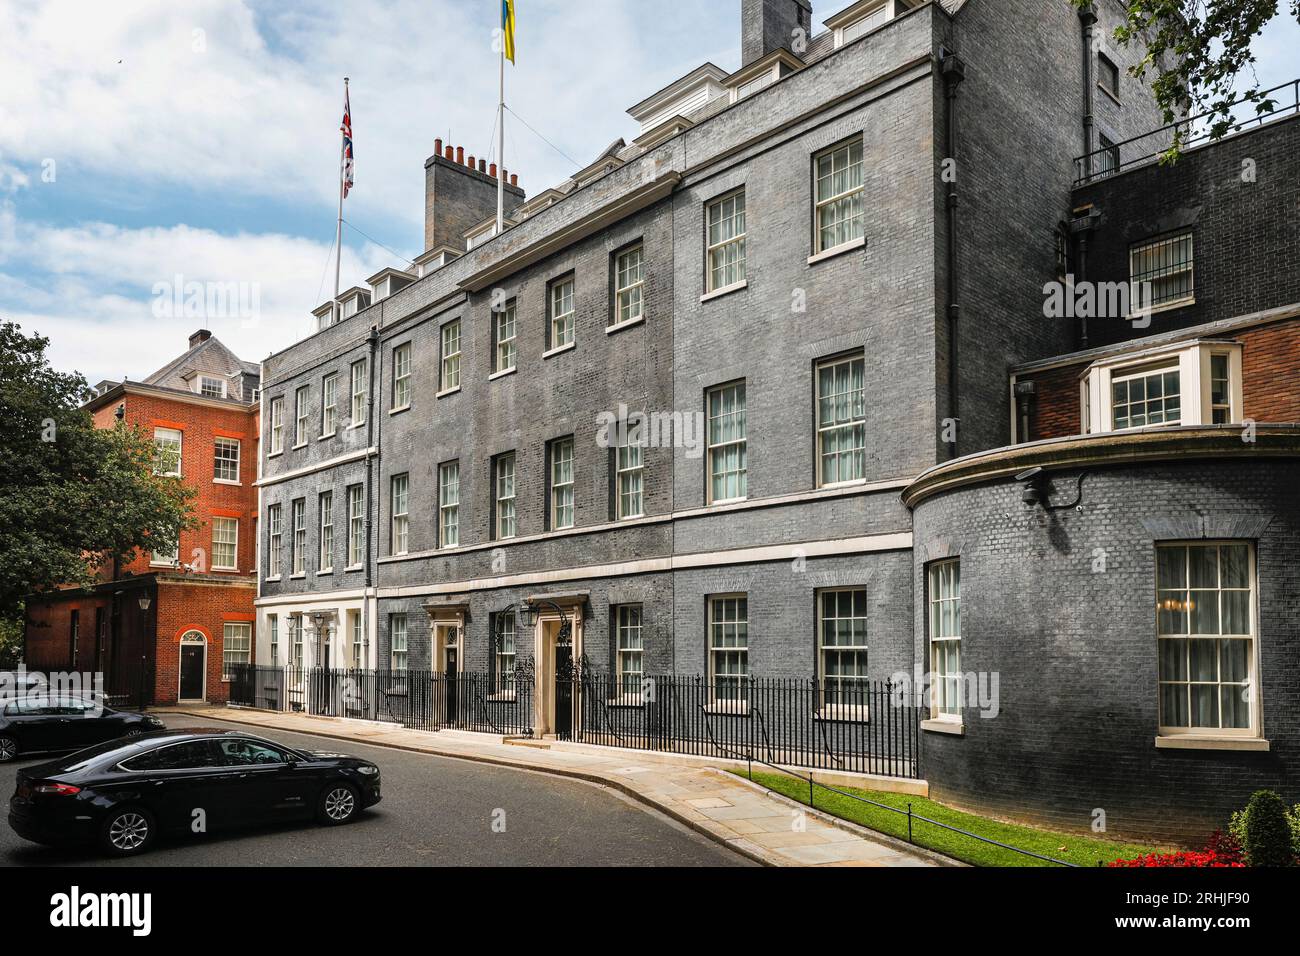 10 Downing Street, architecture extérieure emblématique des résidences du premier ministre, vide de soleil, Westminster, Londres, Angleterre, ROYAUME-UNI Banque D'Images